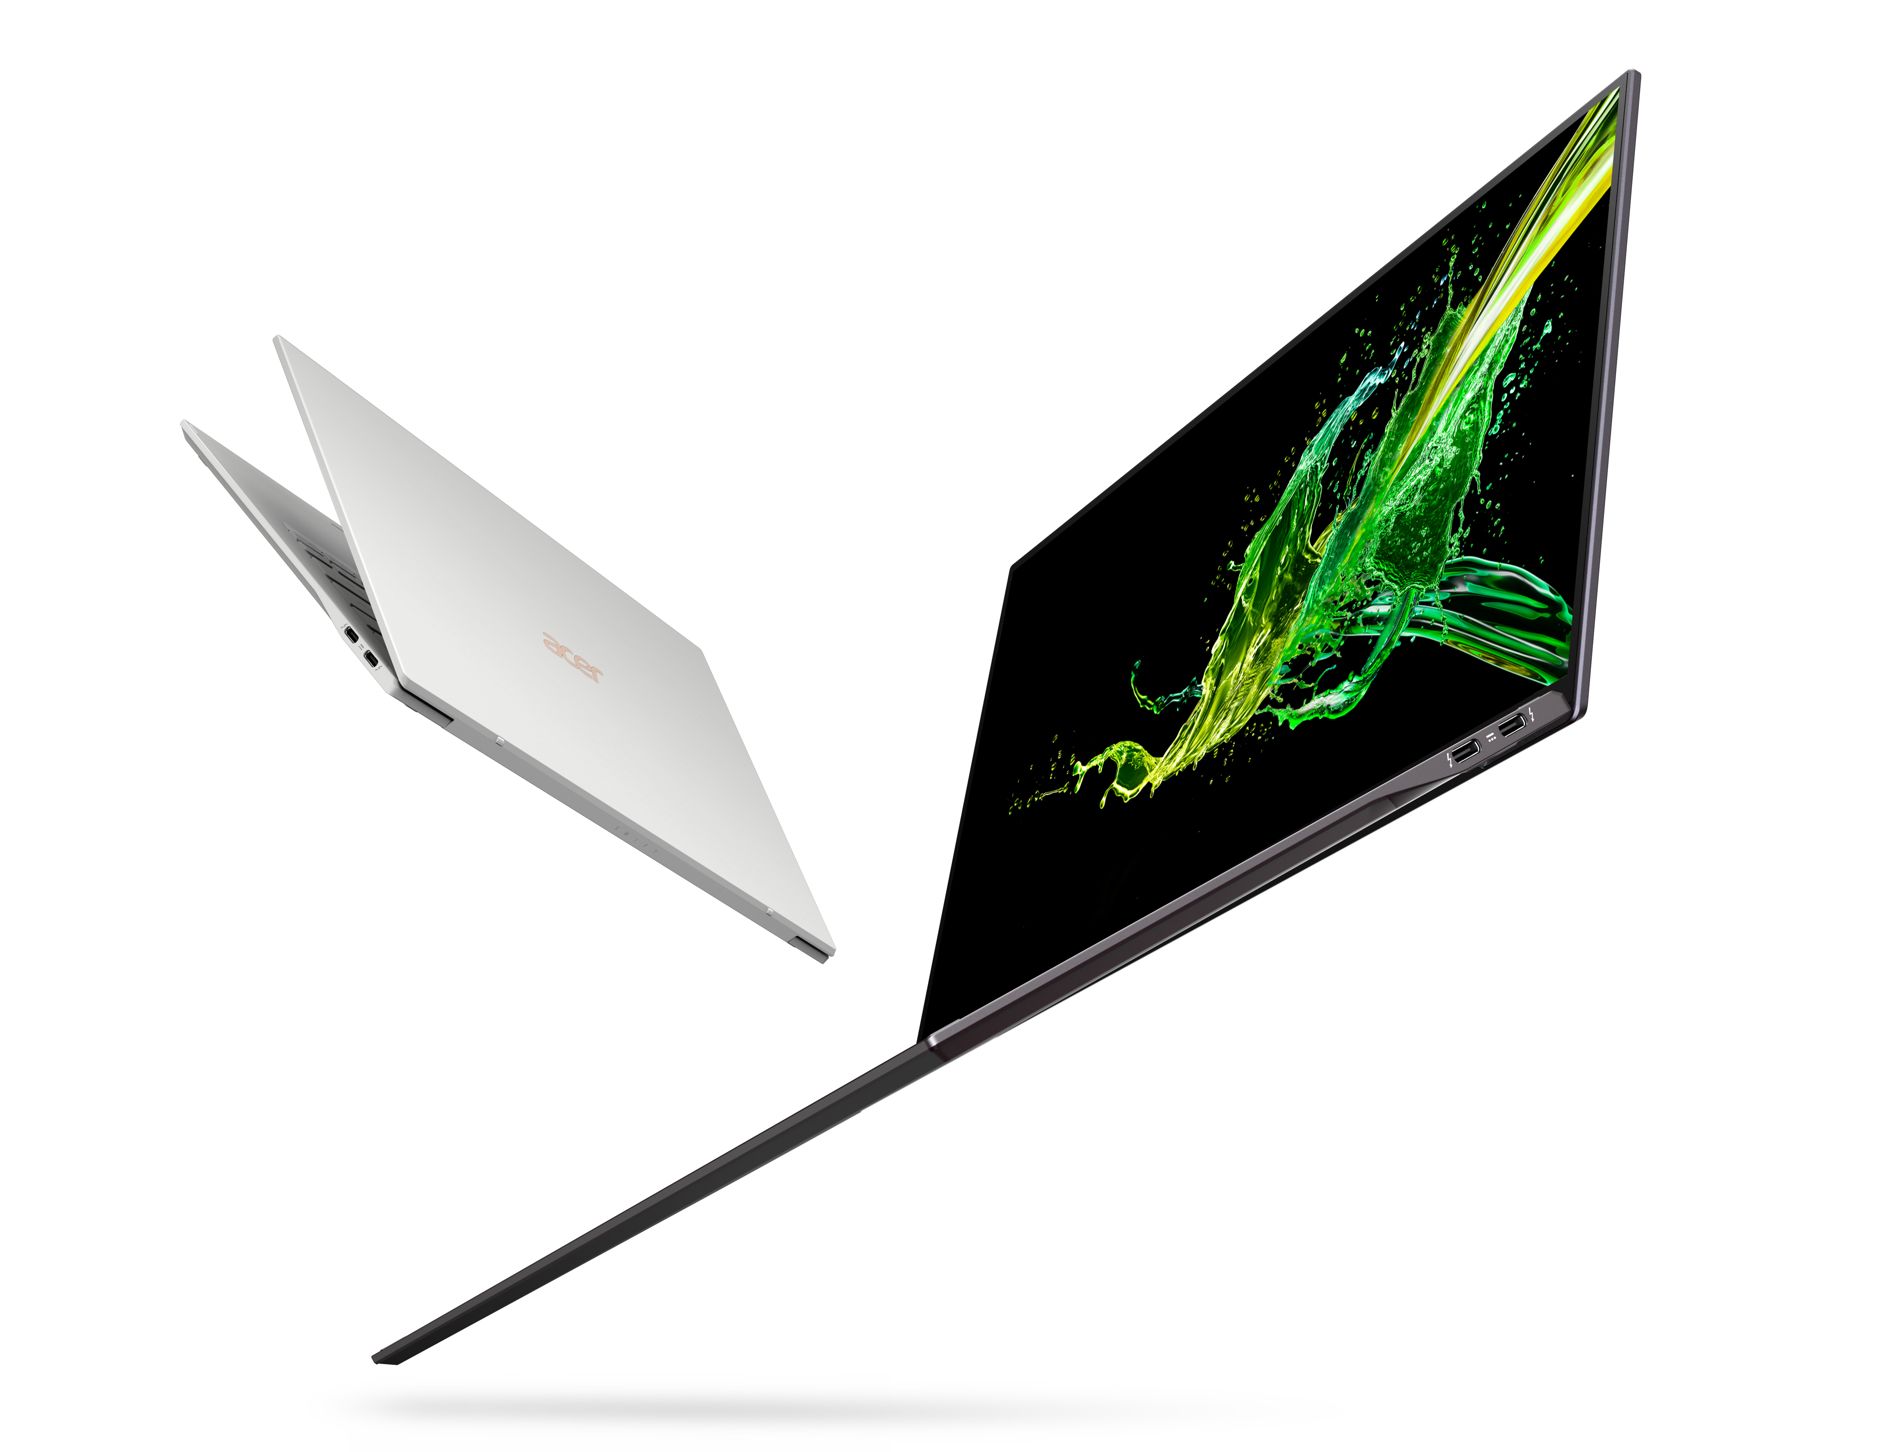 Yeni Acer Swift 7 daha ince ve daha hafif